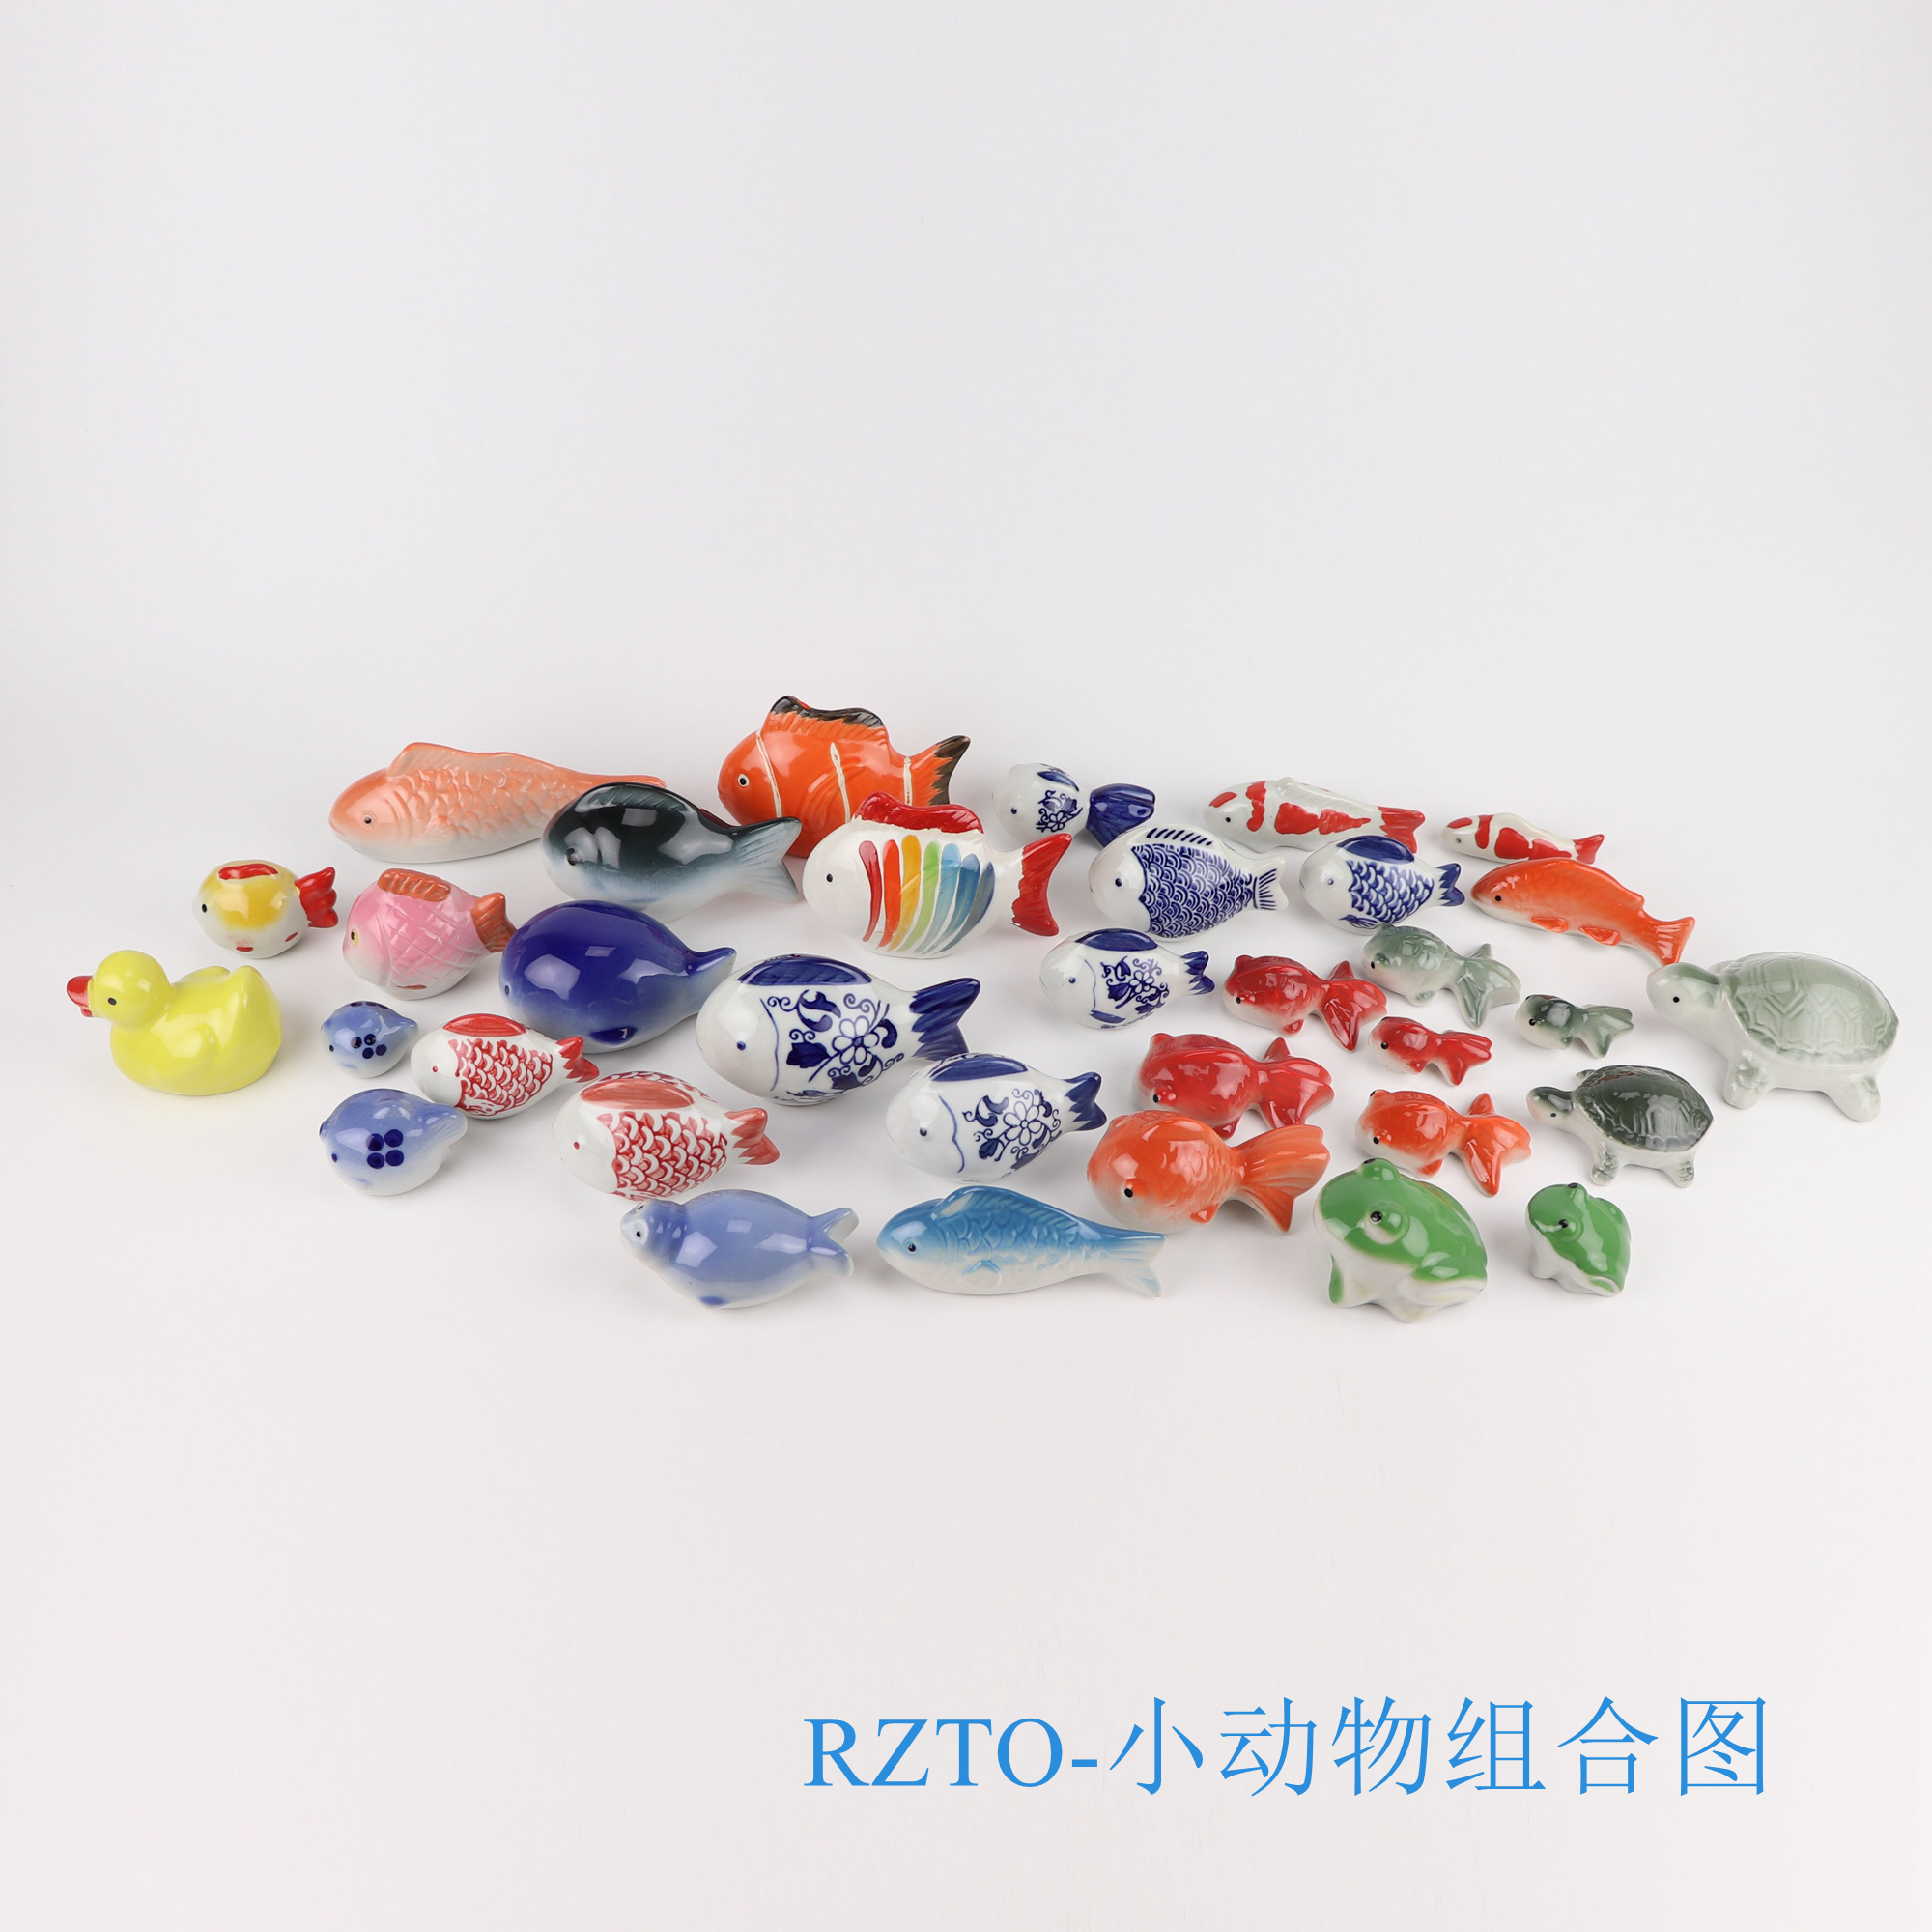 雕塑鱼鸭子青蛙乌龟小动物组合图;产品编号：RZTO-小动物组合图     